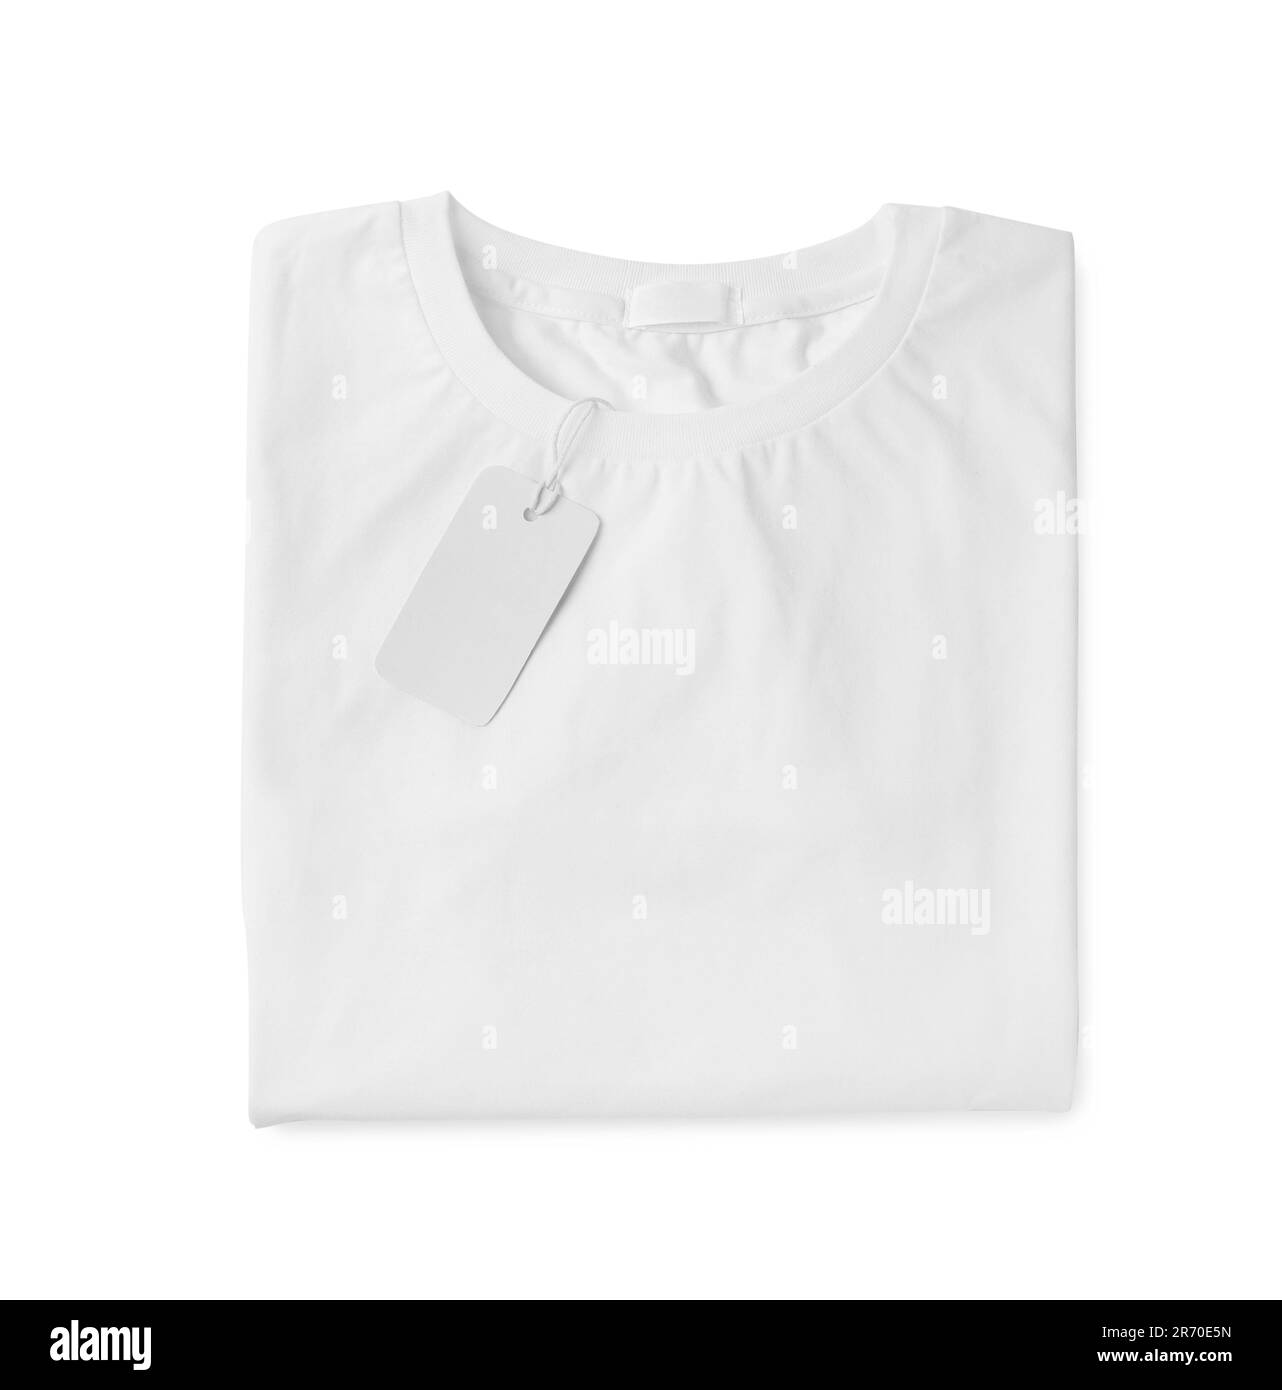 Elegante T-shirt con etichetta isolata sul bianco, vista dall'alto Foto Stock